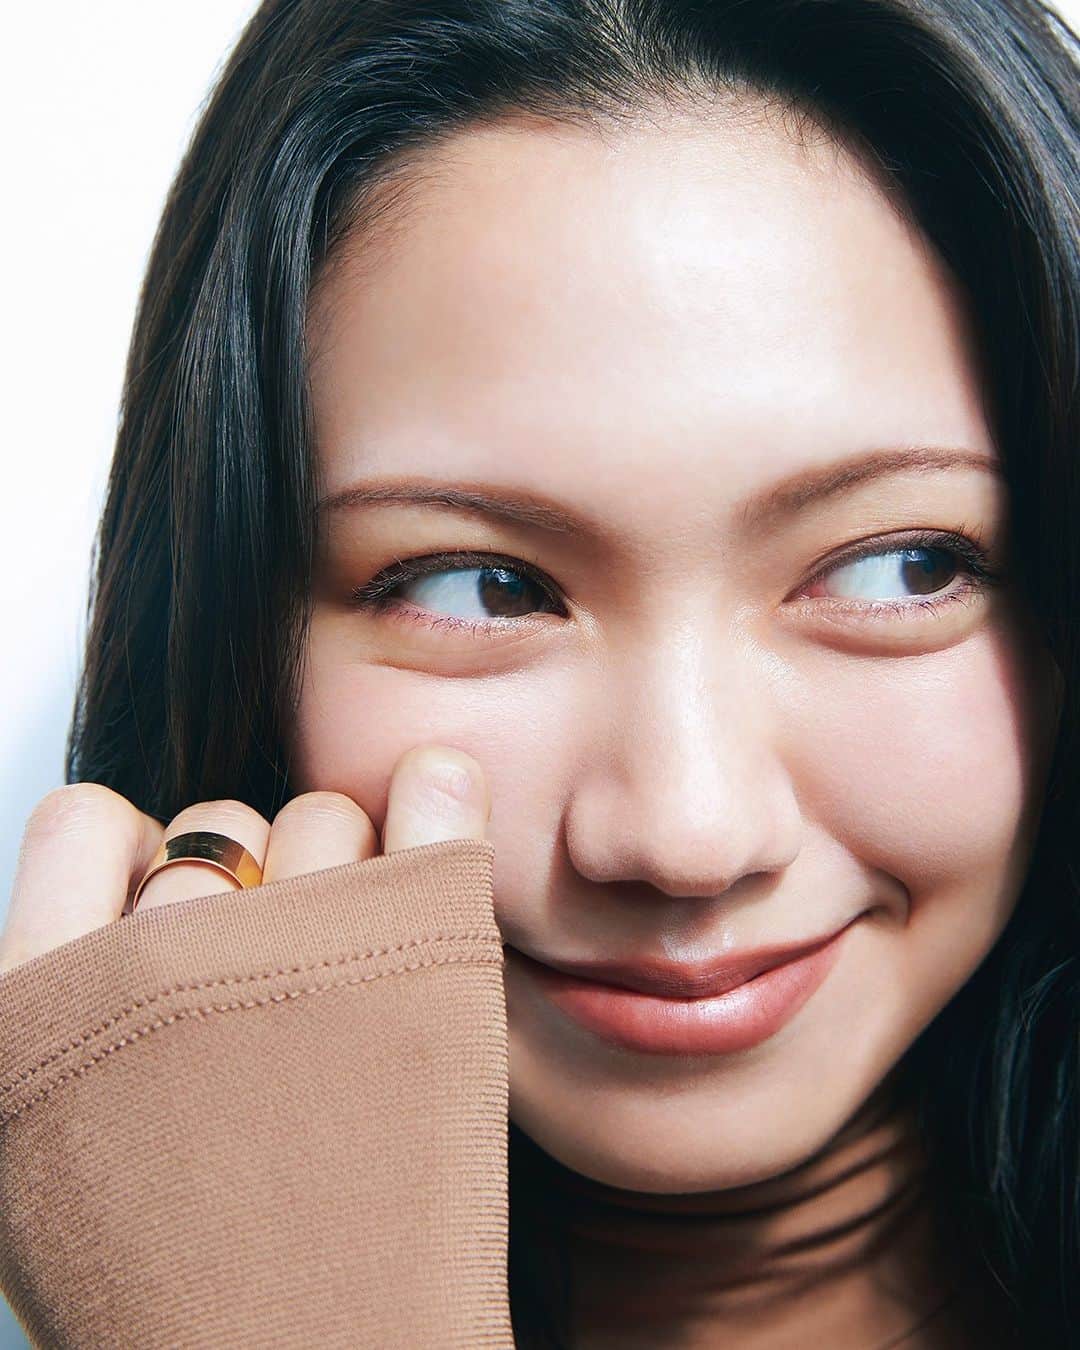 美的 Biteki's official Instagram! さんのインスタグラム写真 - (美的 Biteki's official Instagram! Instagram)「二階堂ふみさん『美的』11月号スペシャルインタビュー 「美容も人生も自分らしく楽しんでいきたい」  『美的』初表紙を飾った女優の二階堂ふみさん。カメラを向ける度にクルクルと変わるポージングがとてもおしゃれで、その表現力と存在感は唯一無二。気になるプライベートライフから、「ここ数年で高まりつつある」という美容熱についてもお話を伺いました。  佇まいそのものに、洗練されたオーラが宿る 私にとってメイクとは、何より気分を上げてくれるもの！  美容も人生も。肩の力を抜いて自分らしく楽しんでいきたい  キメ細かなすべすべの肌に、すらりとしたヘルシーボディ。そこに圧倒的な表現力が加わり、ハッピーな笑顔から凜と見つめる眼差し、全身を使ったのびやかなポージングが次々と繰り出され、撮影中スタッフ一同魅了されっ放し！  「とても楽しい撮影でした。今回3パターンのメイクにトライさせていただきましたが、個人的にはハットをかぶったカットの囲み目メイクが好きでした。プライベートでも上下まぶたのキワにラインを入れるメイクが今の気分。アイメイクが少し強めのときは、ベースメイクはナチュラルに仕上げるようにしていて、日焼け止めをつけてファンデーションは赤みや毛穴が気になるところにほんの少し。“自分のテンションが上がるメイク”を大切にしています」  ここ数年で、美容の楽しさに目覚めたという二階堂さん。そのきっかけとなった出来事とは？  「ドラマの撮影中にモニターに映る自分の顔がすごくむくんでいたときがあって。その原因は恐らく、撮影前にハマグリの酒蒸しを食べたから。おいしくて汁まで全部飲み干したんですよね（笑）。そこから気をつけなきゃと思って、むくみ対策などいろいろ意識していたら、あるとき“私、こんなにフェースラインがすっきり見える角度があるんだ”という発見があり、美容ってちょっと楽しいぞと思って。もちろん、俳優はすべてがキレイに見えればいいわけではないのでシーンにもよりますが、どうやったらいいコンディションにもっていけるかを試すのが楽しい。スキンケアやマッサージをはじめ、ニキビができたら美容皮膚科に行ったりと、いろいろトライしています」  歩くことがすごく好き。でも今は、ピラティスも気になっています  ほかにも気になるのが、しなやかで美しいボディラインを保つ秘訣。意外にもトレーニングはせず、その代わりに毎日の散歩を欠かさないという。  「犬の散歩を兼ねてなのですが、今の時期だと朝と夜それぞれ1時間くらい。2匹飼っていて、それぞれ歩くスピードが違うので30分ずつ別々に行きます。冬だとその倍くらいの時間かな。私、歩くことが好きなんです。真夏はさすがに厳しいですが、冬は特によく歩いているかもしれません。東銀座の歌舞伎座から渋谷辺りまで、2時間くらい歩いたこともあります、意外と行けましたね（笑）。でもトレーニングをしたいという思いもあって、今はピラティスが気になっています。気持ち良さそうだなと思って」  この号が発売される頃に29歳を迎える二階堂さん。苦しかったと語る20代を経て、今は肩の力が抜けている姿が印象的でした。  「これから20代ラストイヤーですが、30代に向けて思うことは、なるべく無理をせず、でも一生懸命いろんなことに取り組んでいきたい。12歳からこのお仕事をさせていただいていて、経験は重ねているのに精神的には未熟で、20代はそれが苦しかったり悩むこともありました。でも最近はいい意味で力が抜けてきたのかもしれません。叱ってくださったり、指摘してくれる人の意見をちゃんと聞ける自分でありたいというのは常々思いますが、自分より年下の子から学びを得たりするのも今すごく楽しいんです。考え方や意見を聞きたいし、教えてもらうこともたくさん。そう思えることが幸せだし、それって周りの素敵な先輩方のおかげでもあるから、恵まれているなと感じます。だから年齢を重ねることは、私にとって楽しみがどんどん更新されることでもあるんです」  優しいけれど、ちょっと皮肉も秘めている。そんな人間らしいバランスをもつ人を美しいなと感じます  二階堂ふみ にかいどう・ふみ／1994年9月21日生まれ。俳優。シリアスからコメディまで多彩な表現力に定評のある実力派。映画『翔んで埼玉～琵琶湖より愛をこめて～』が11月23日に公開予定。  #二階堂ふみ #秋コスメ #秋メイク #新作コスメ2023 #新作コスメ #秋コスメ2023 #bitekicom #コスメ好きさんと繋がりたい #メイク好きさんと繋がりたい #今日のメイク #美的 #美的メイク #メイク好き  #女子力向上委員会 #美容好きな人と繋がりたい #コスメ #今日のコスメ #コスメオタク #美肌になりたい #美容好きさんと繋がりたい #美意識高い人と繋がりたい #コスメ好きな人と繋がりたい #美容垢さんと繋がりたい #メイク好きな人と繋がりたい #美活」10月13日 21時00分 - bitekicom